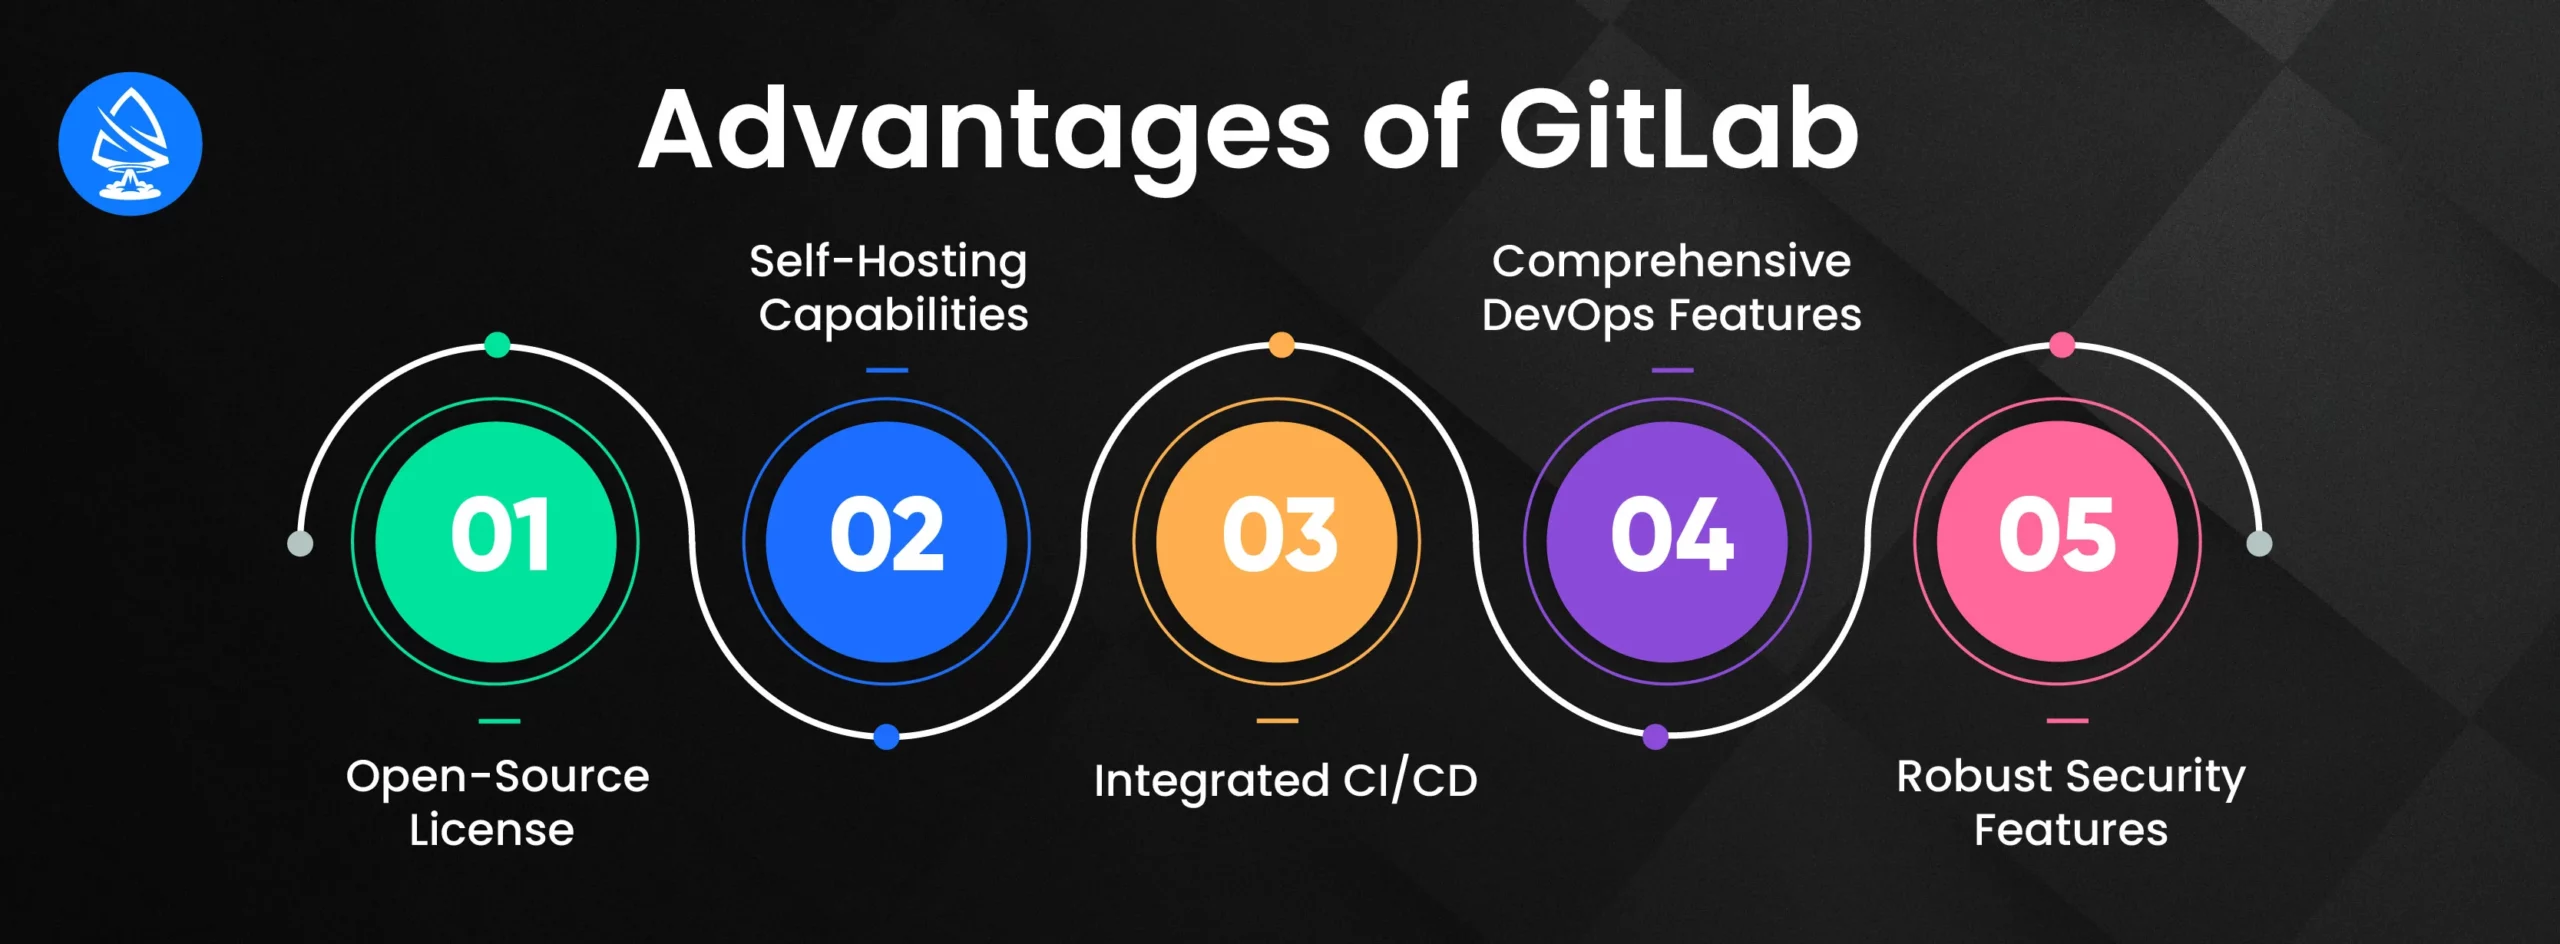 Advantages of GitHub